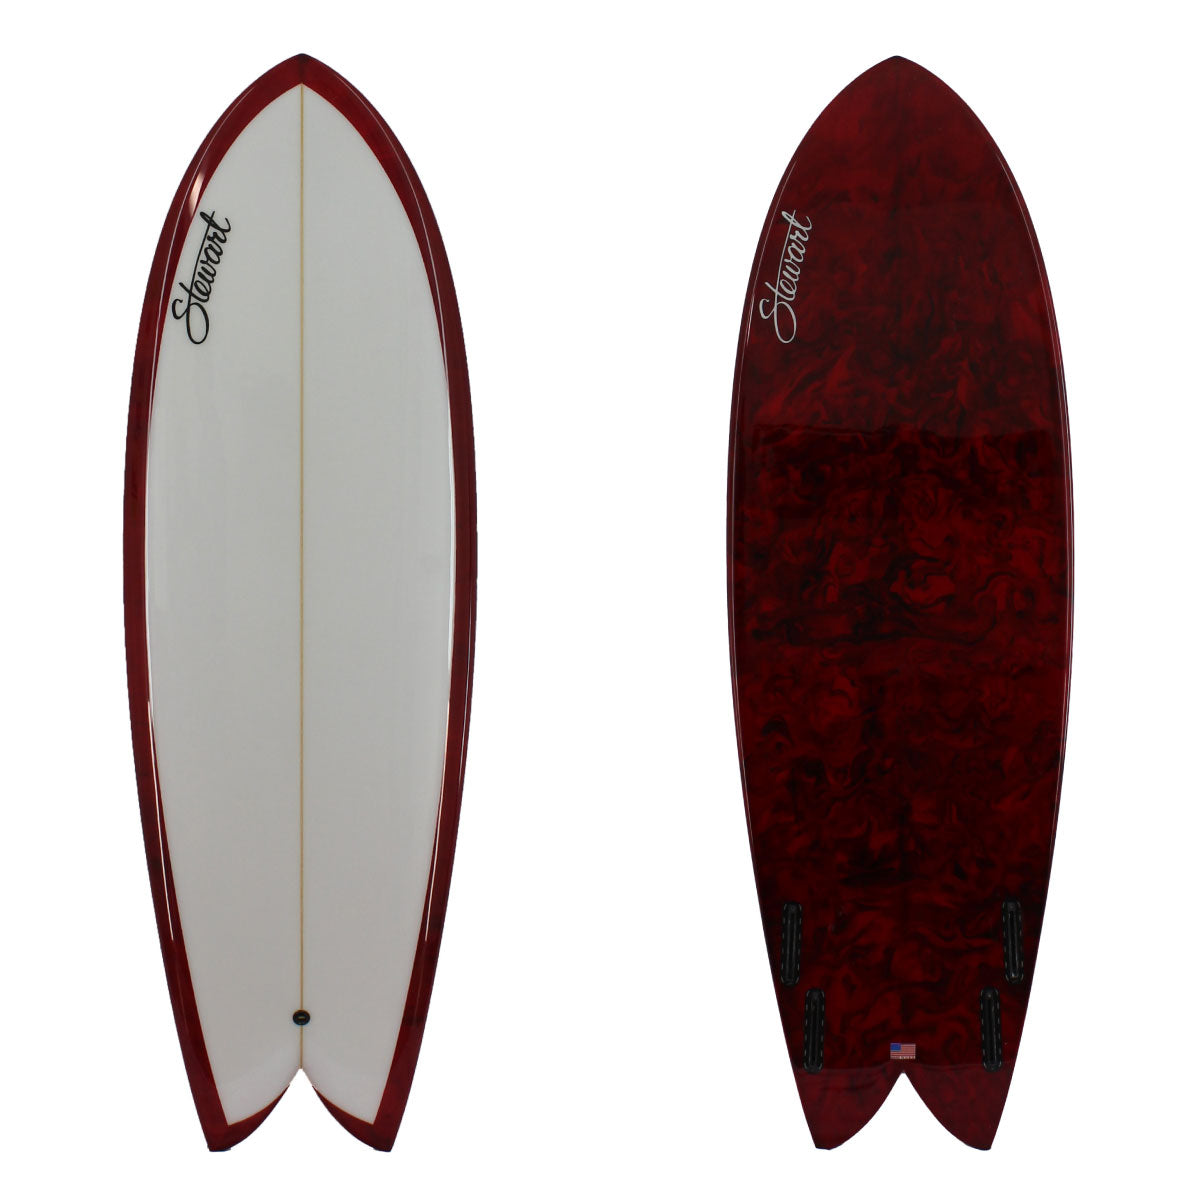 RETRO FISH – Stewart Surfboards